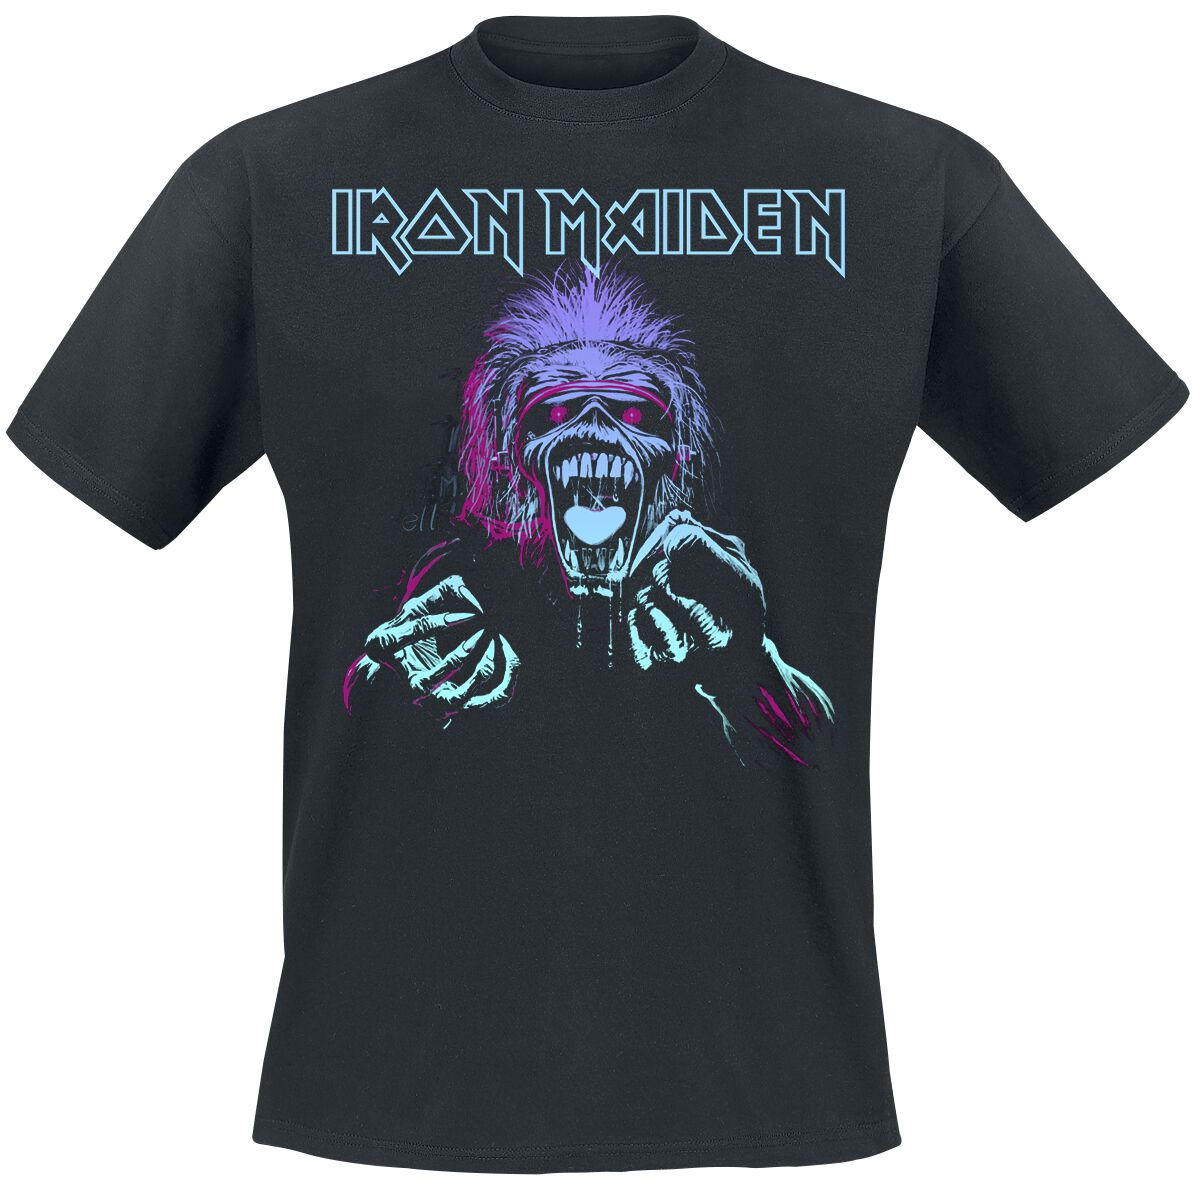 Iron Maiden T-Shirt - Pastel Eddie - S bis 4XL - für Männer - Größe XL - schwarz  - Lizenziertes Merchandise!